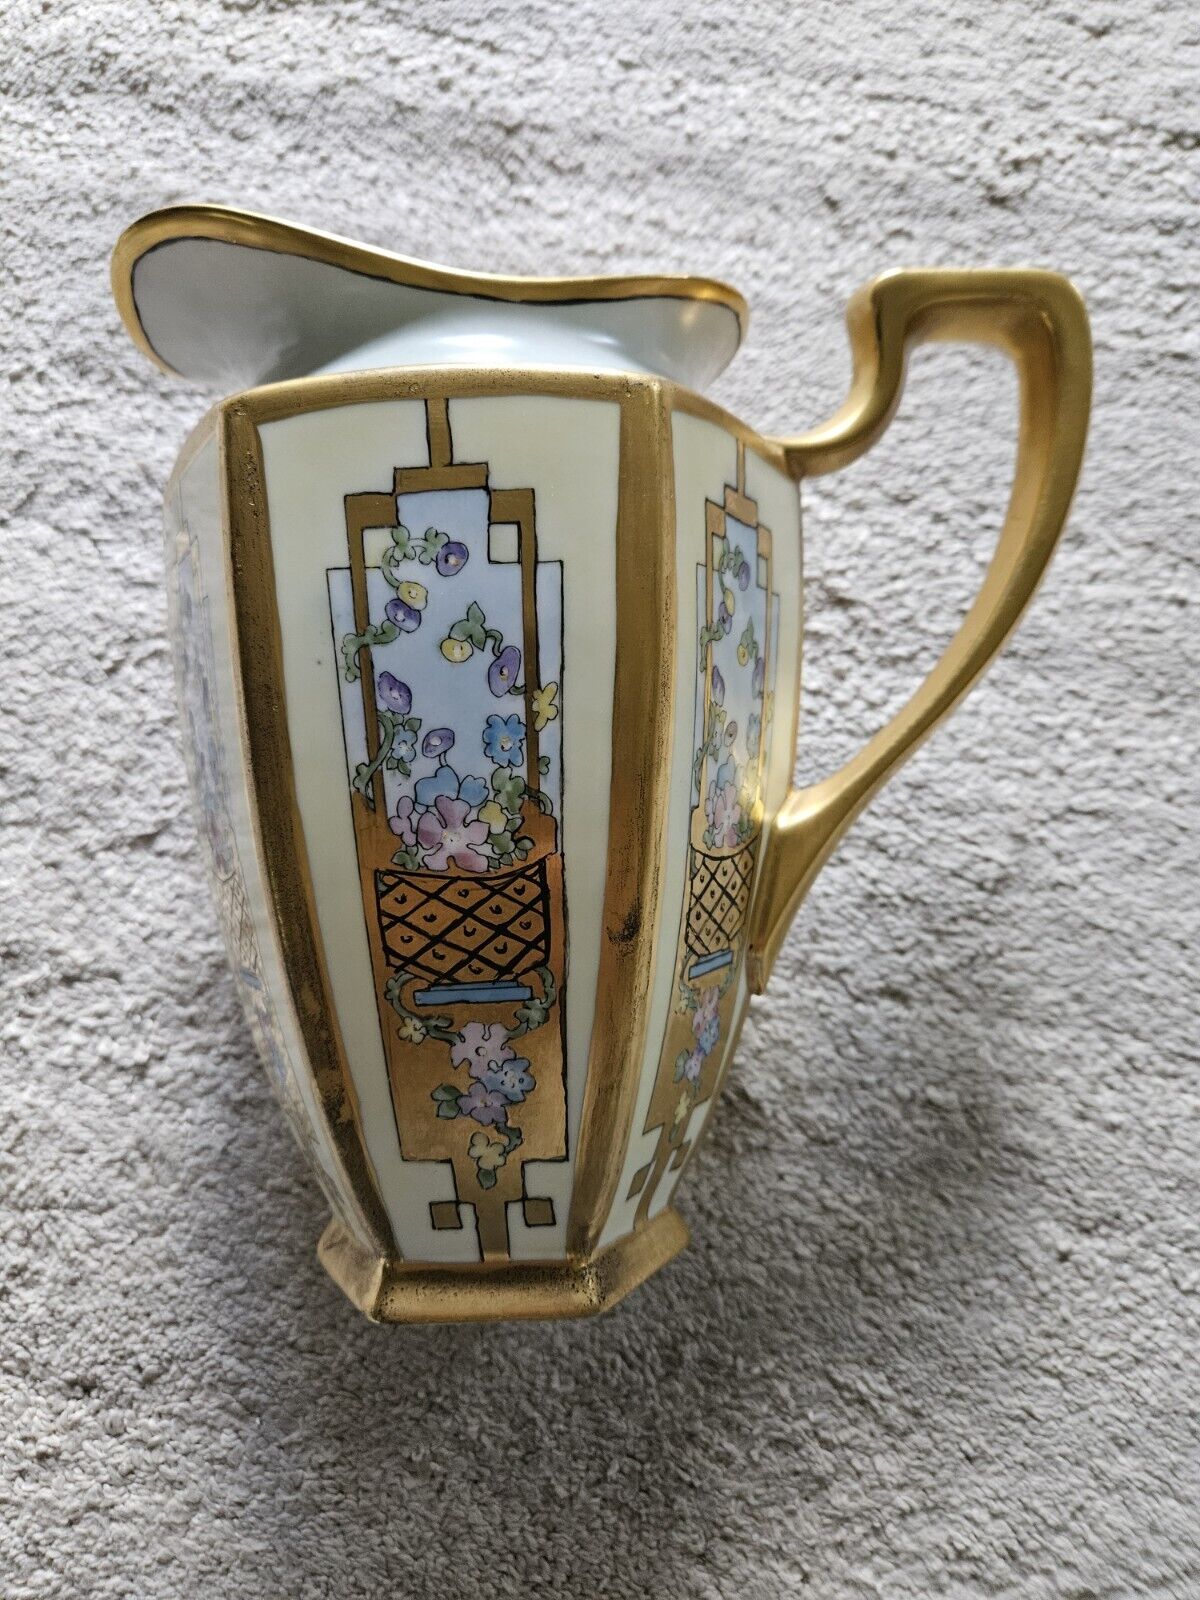 1930 Large Porcelain Painted Pitcher Art Nouveau Flowers Design Gold Trim...